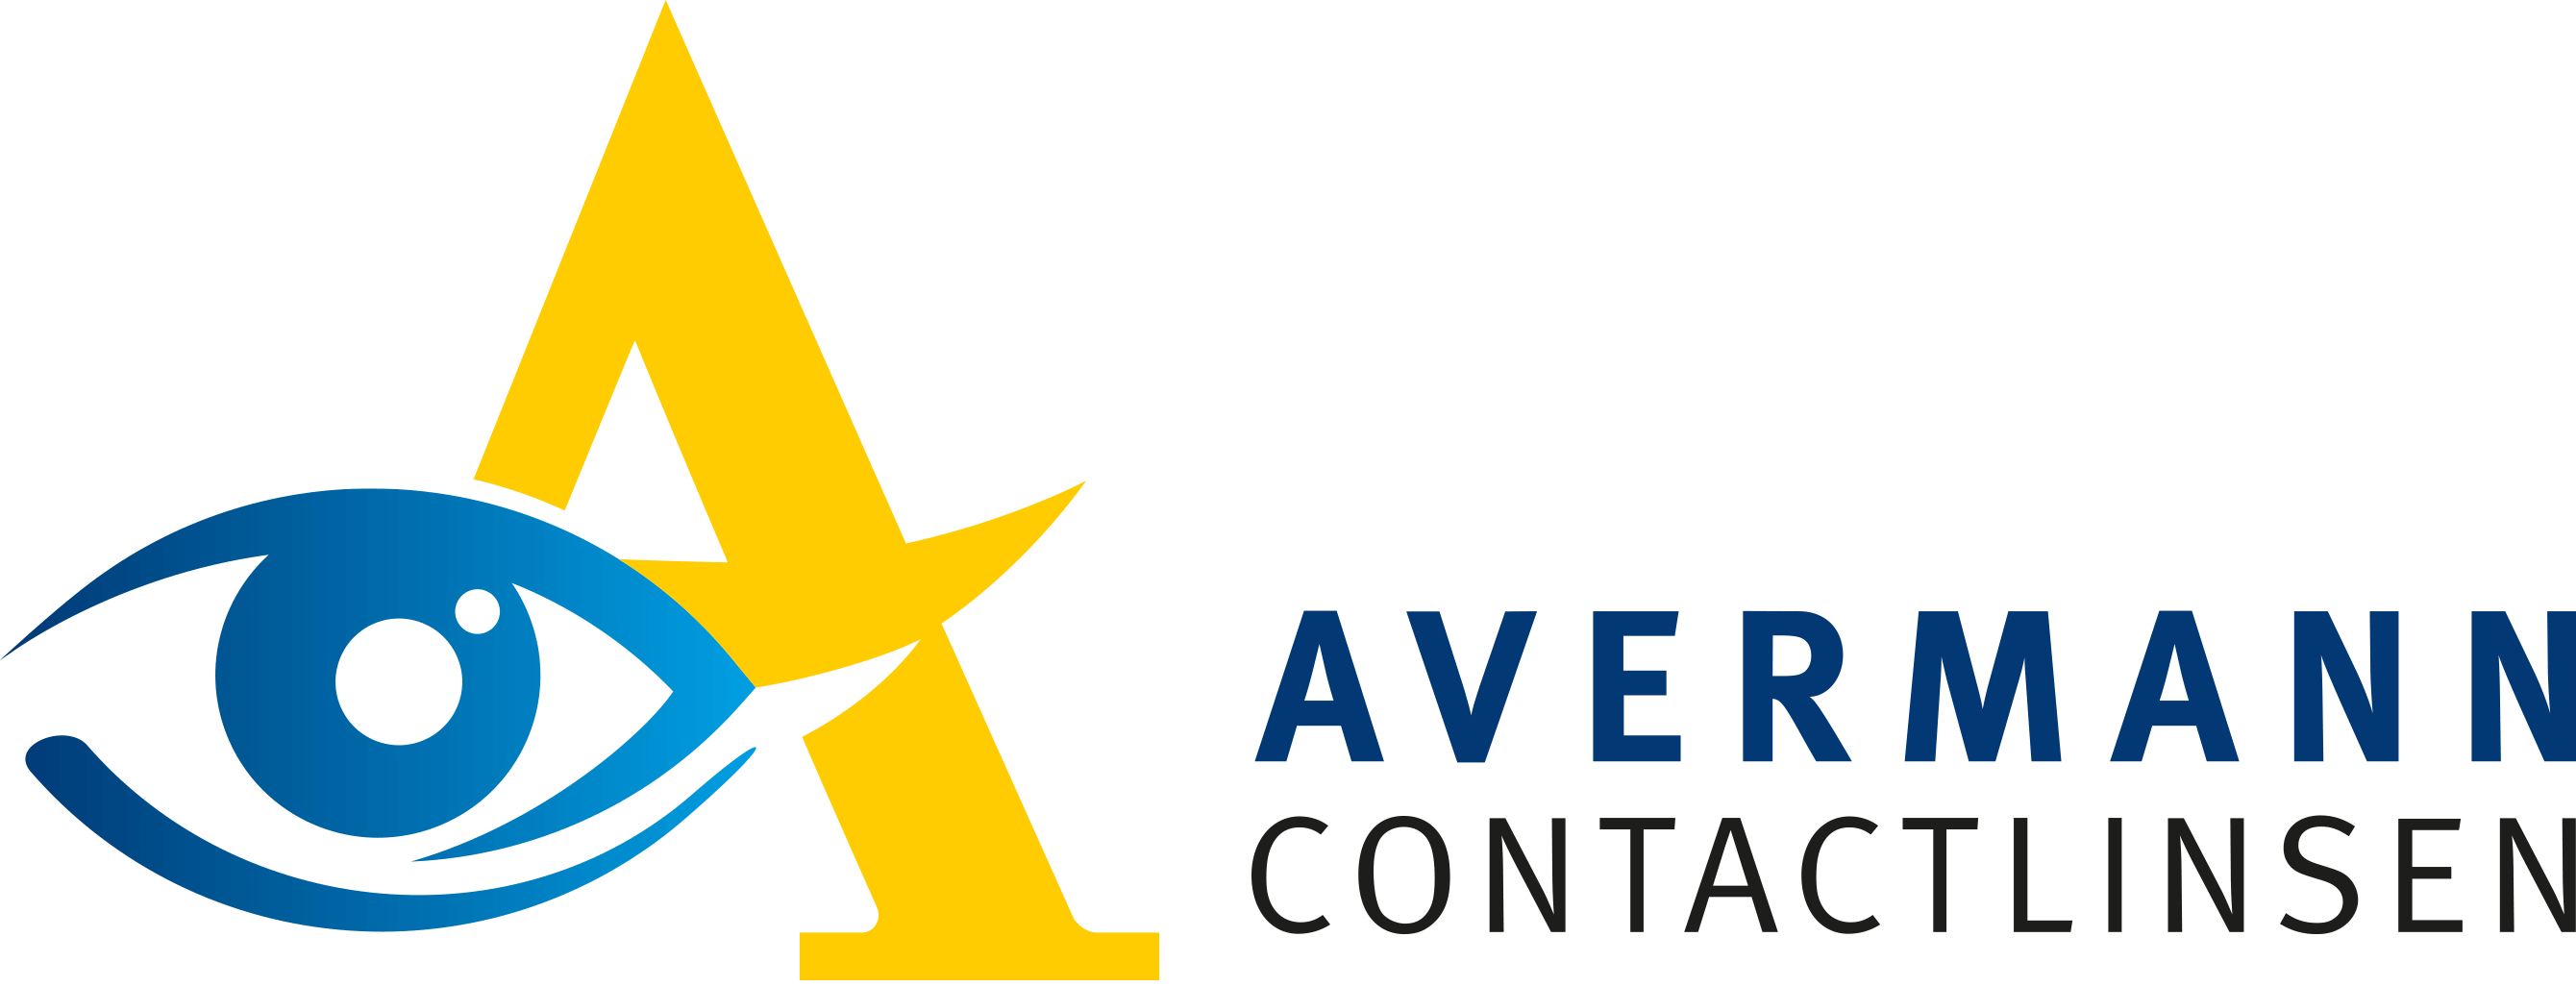 Avermann Contactlinsen